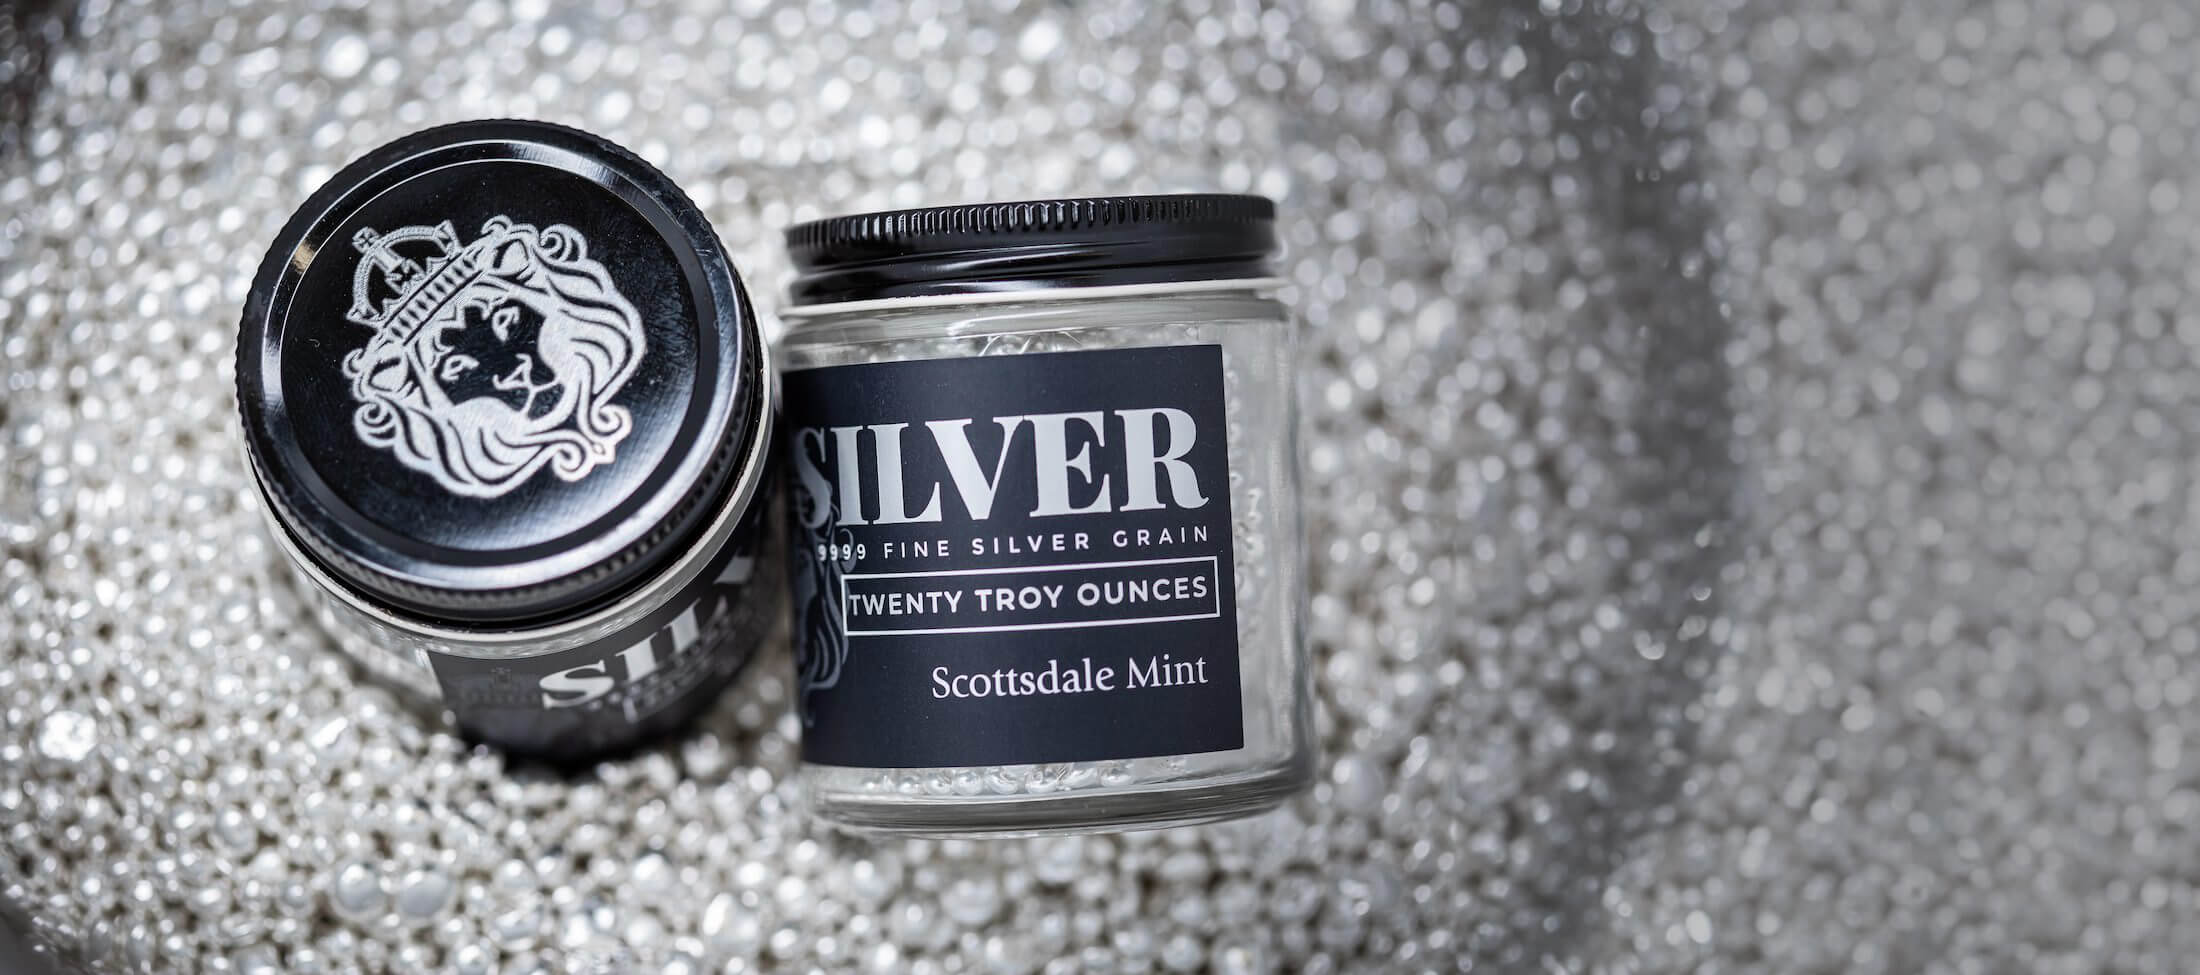 Silver | Scottsdale Mint